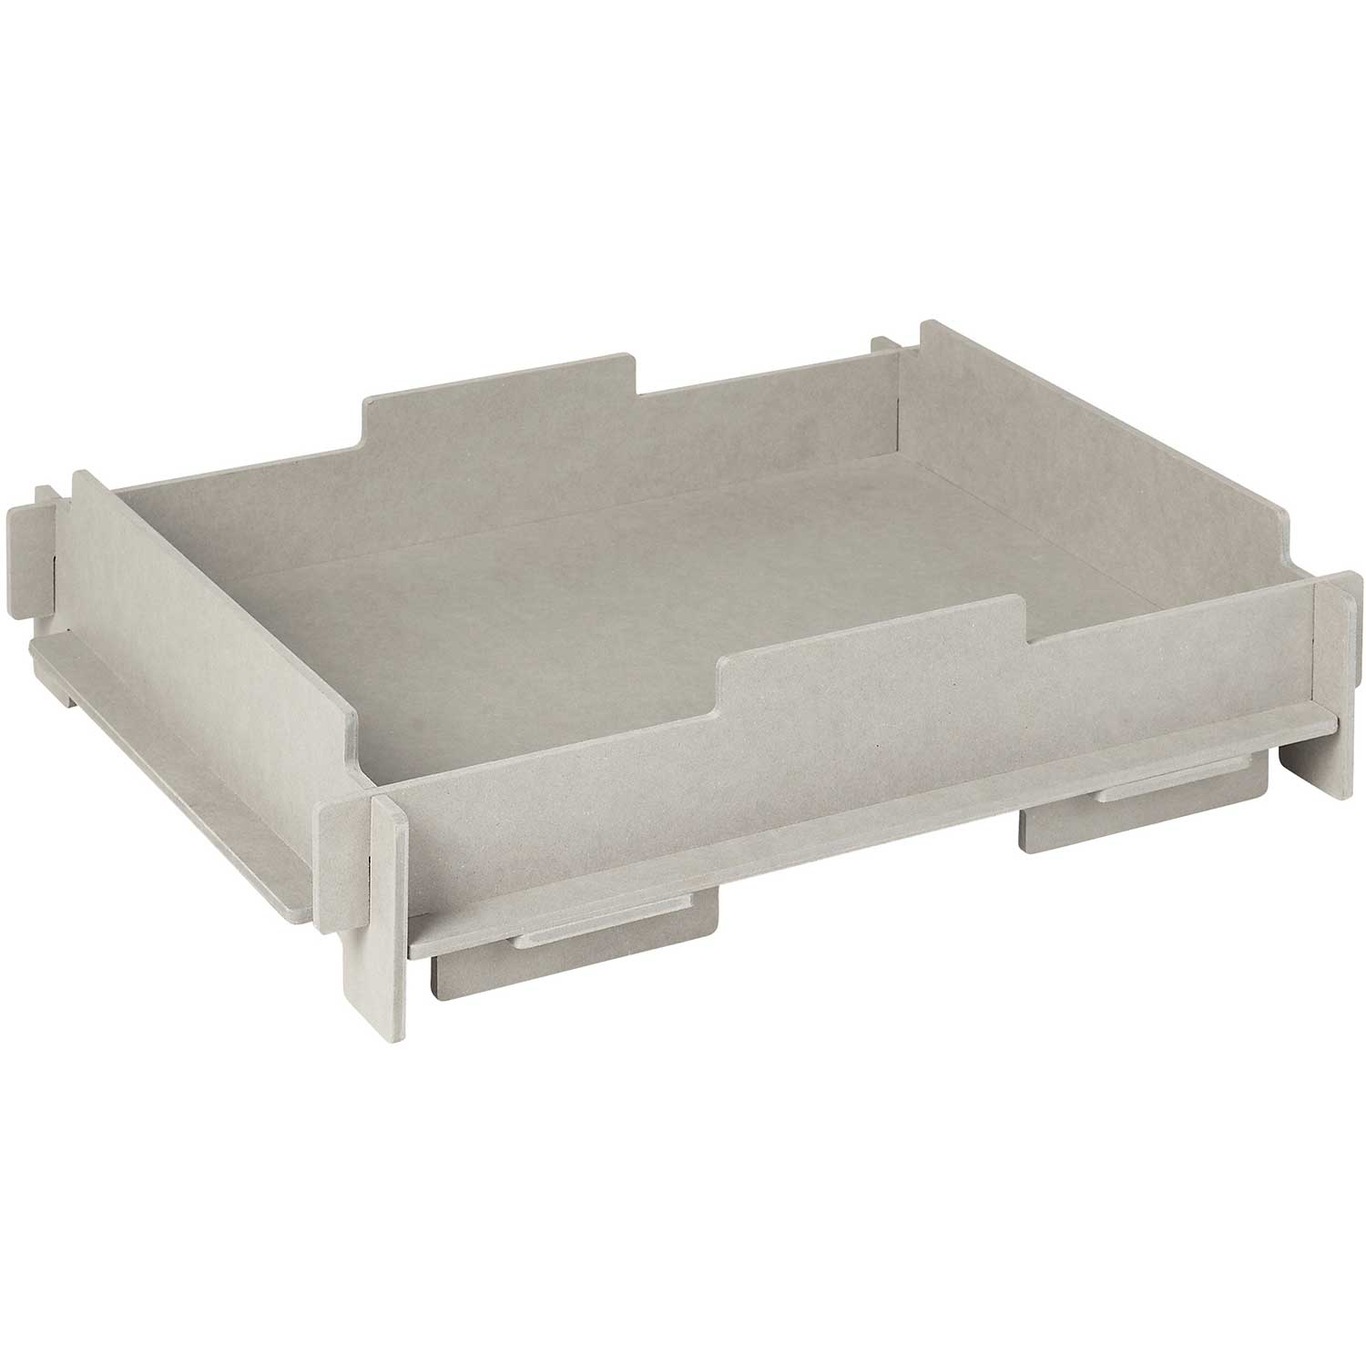 Stacie Storage Box Tray 34x44 cm, Grey